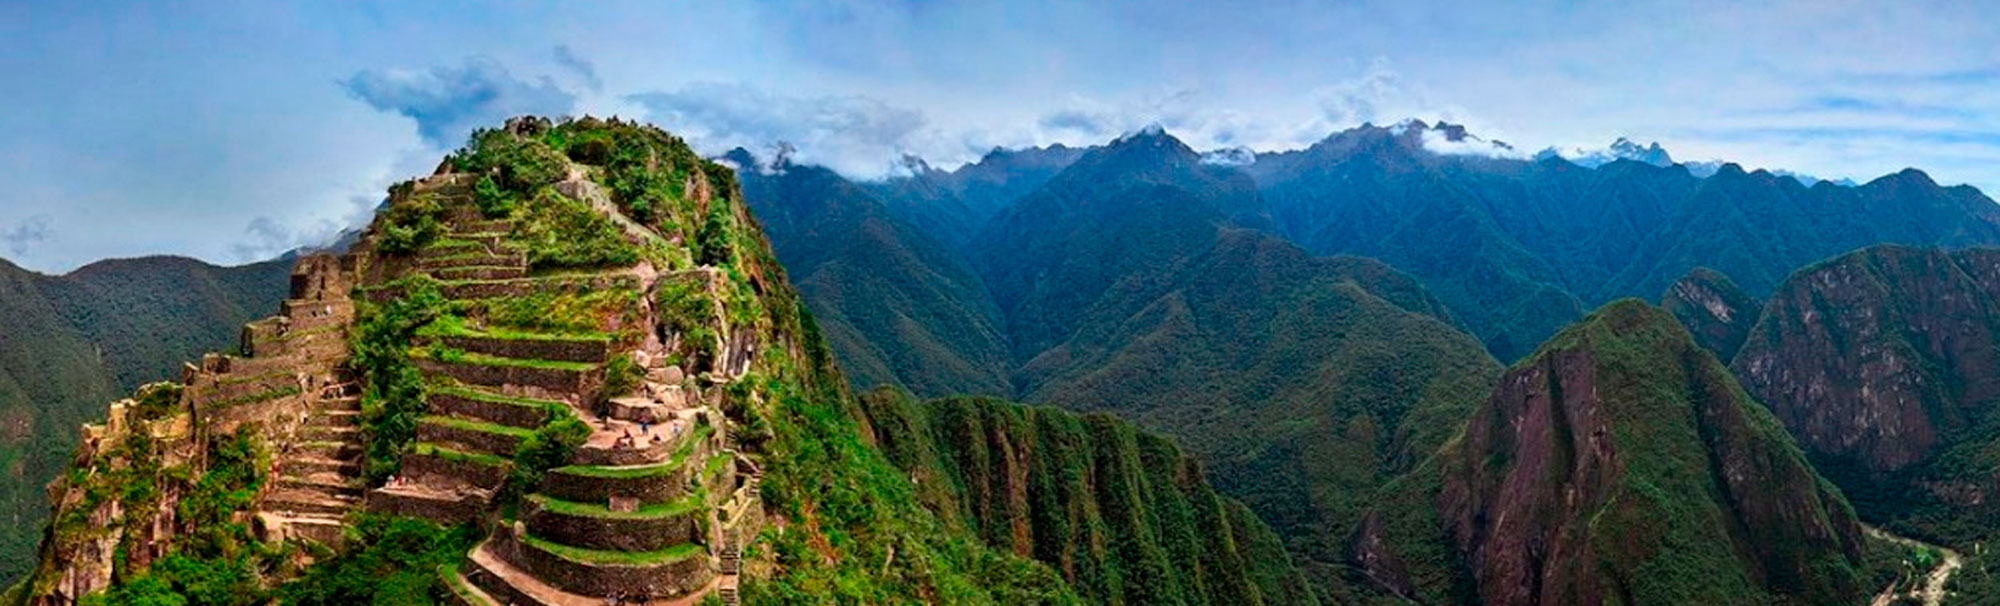 Huayna Picchu Peru 